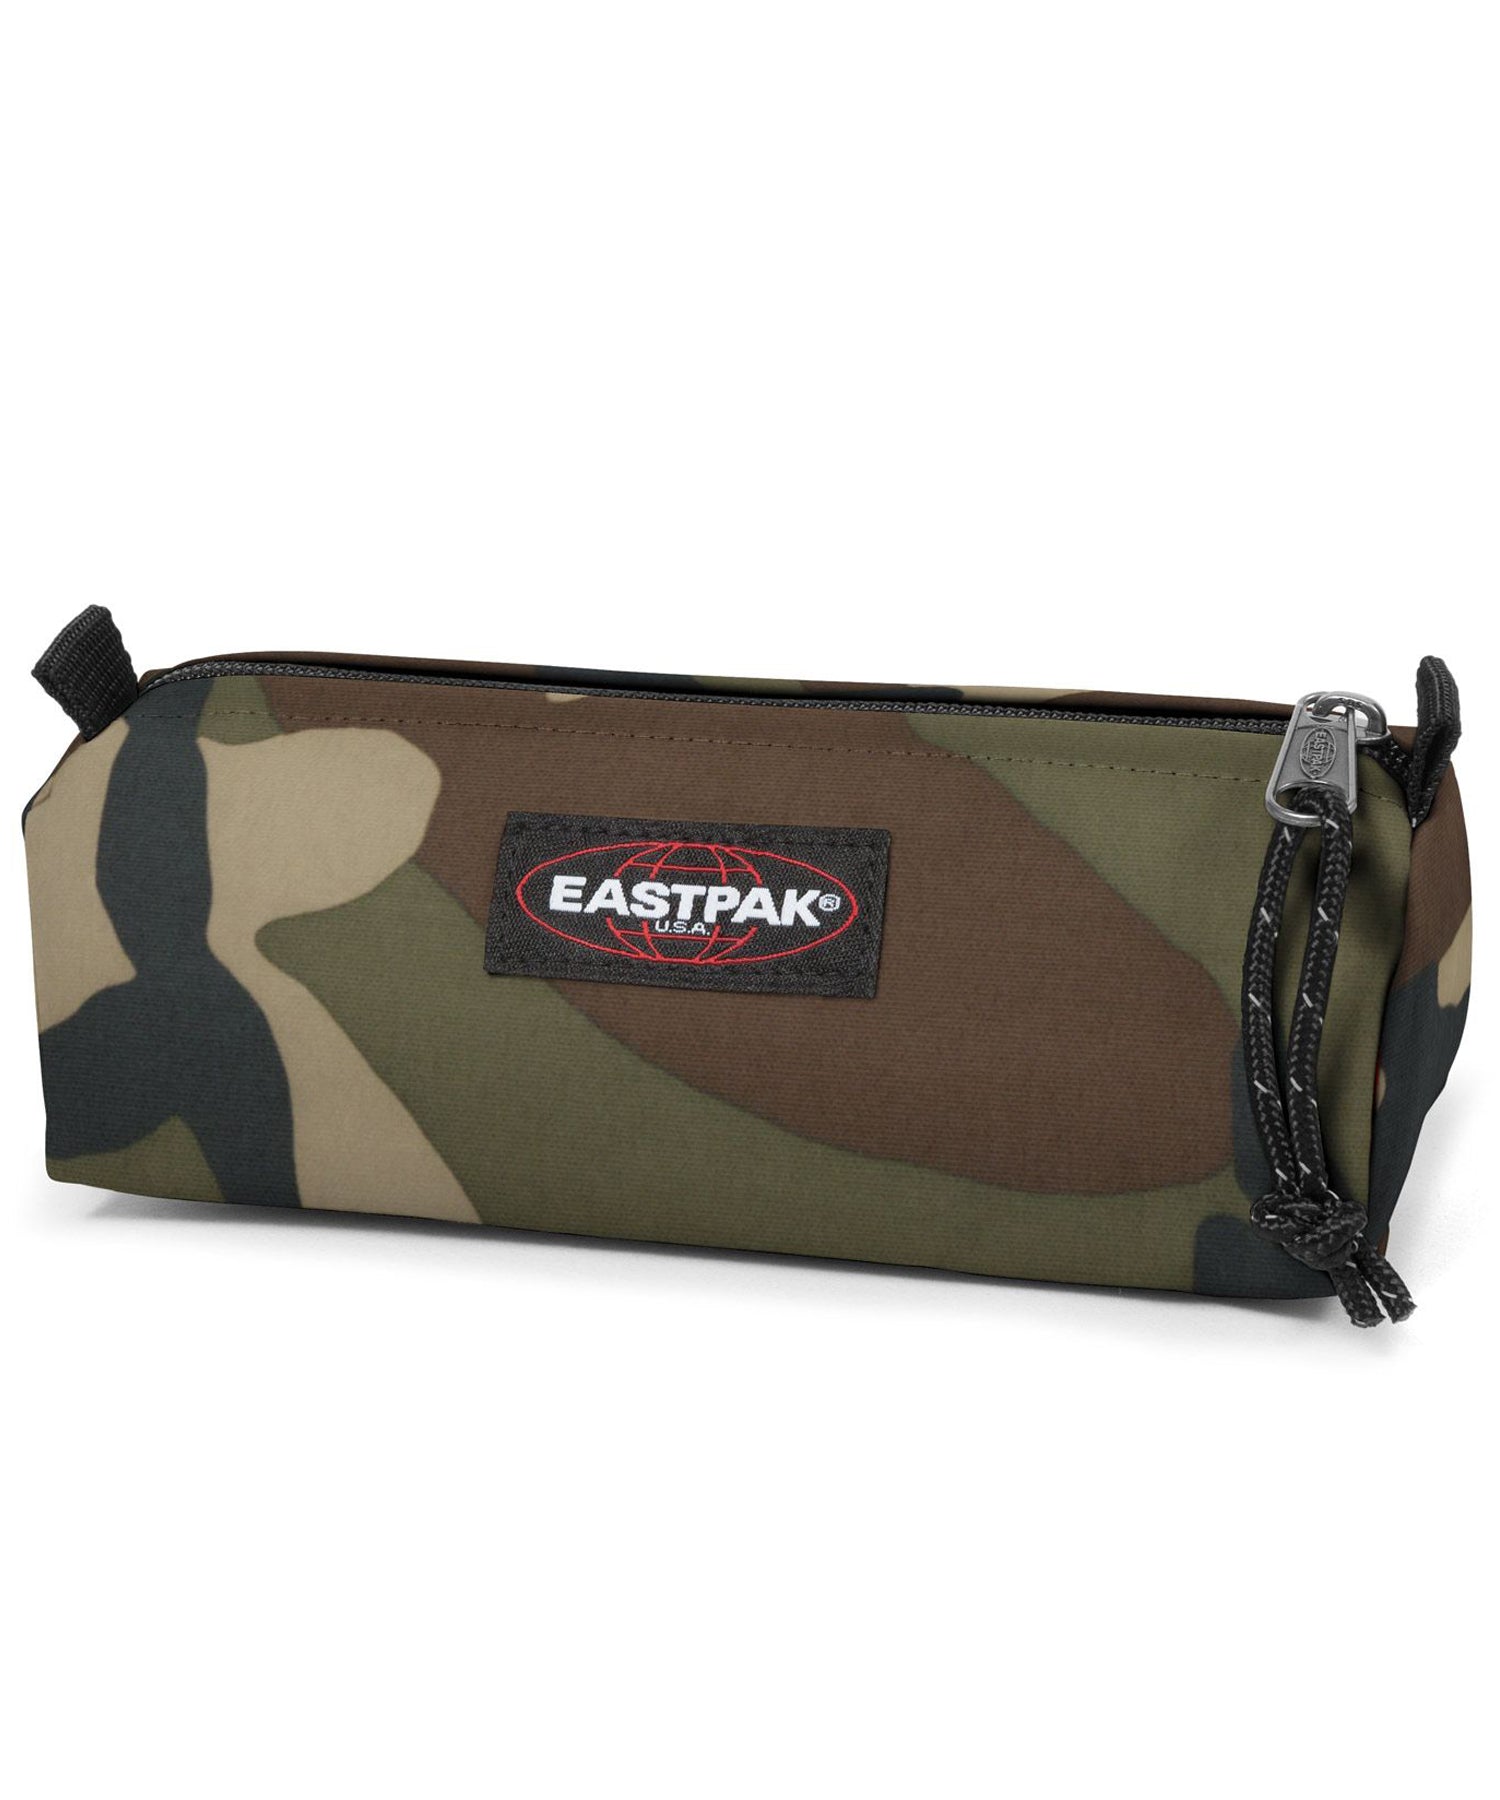 eastpak estuche benchmark de color camo, practico, sencillo, y duradero, cierre con cremallera.